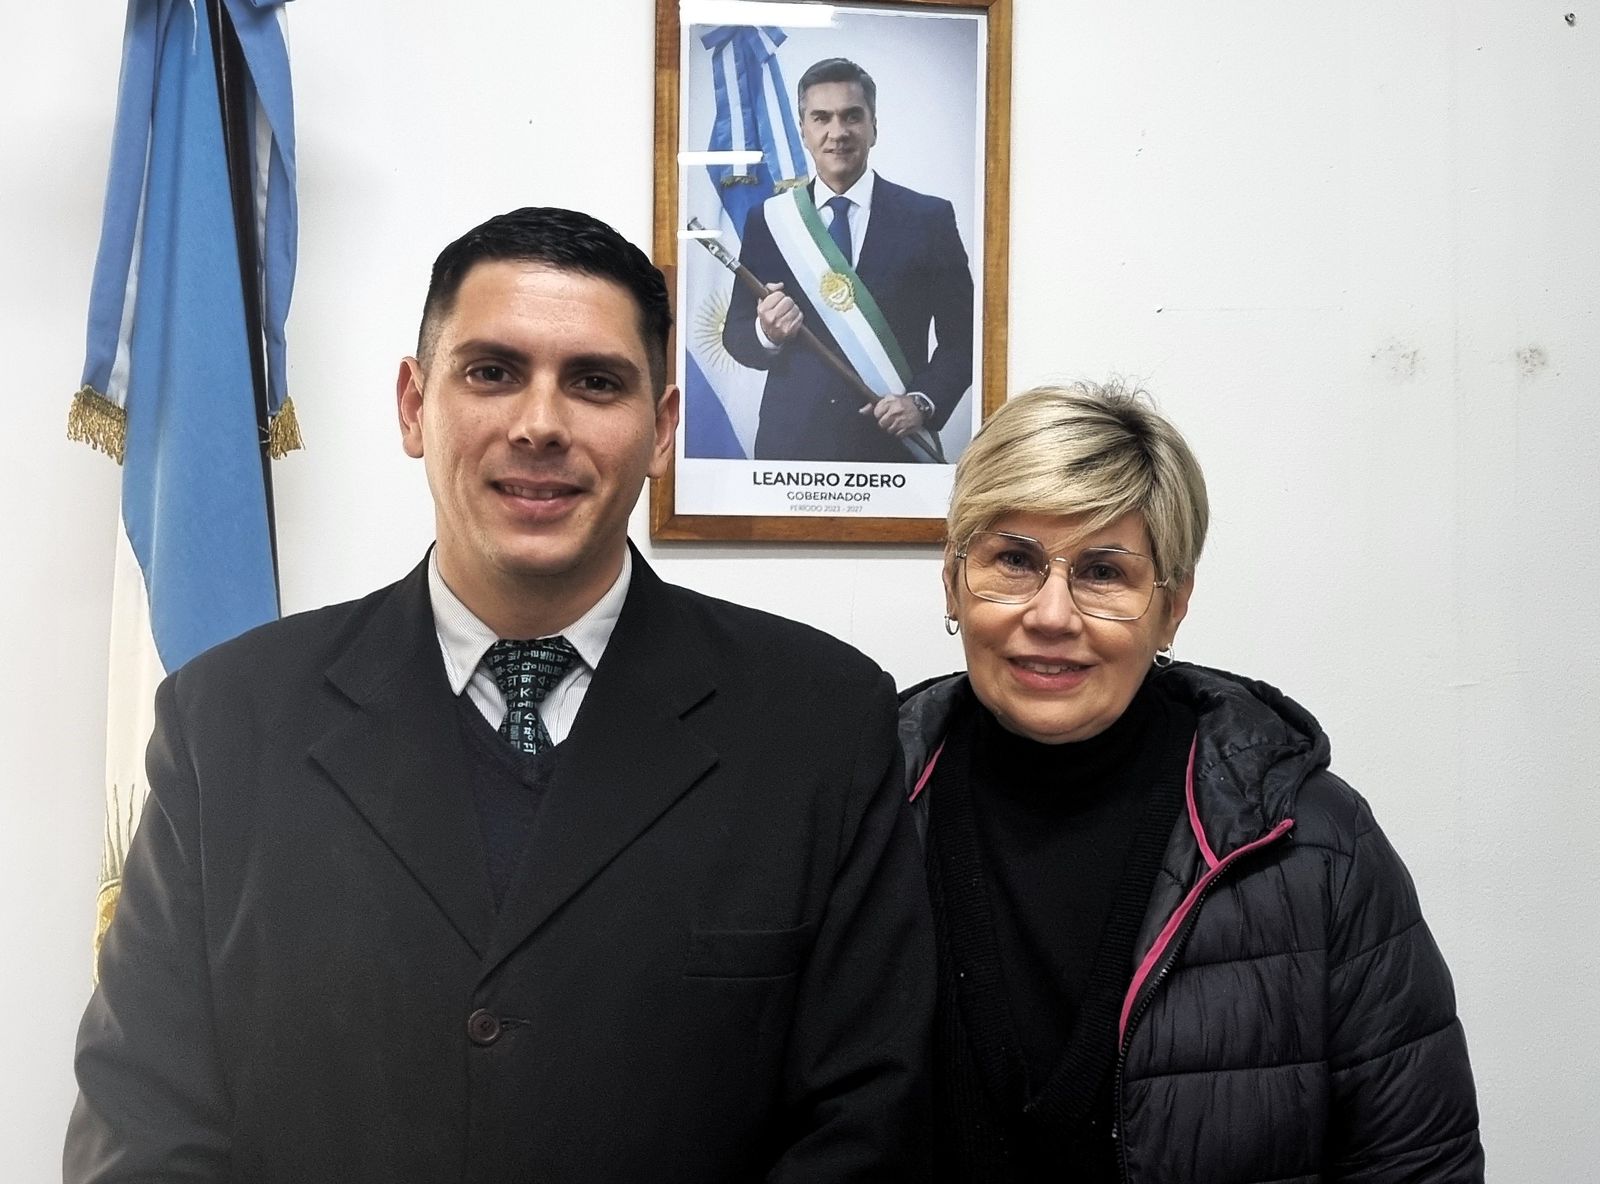 SOFÍA NAIDENOFF REPRESENTARÁ A ARGENTINA EN ENCUENTRO INTERNACIONAL DE LÍDERES EDUCATIVOS